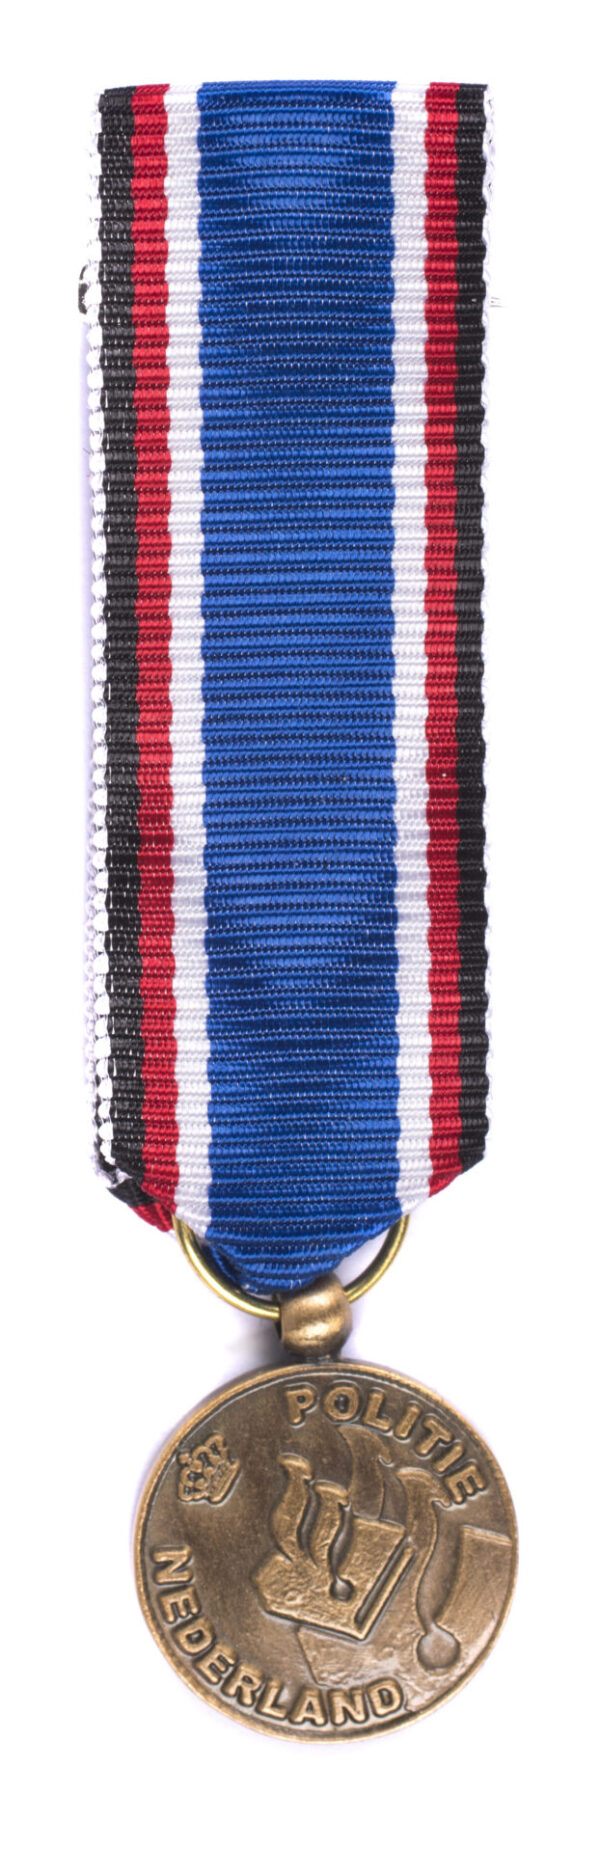 Politie medaille